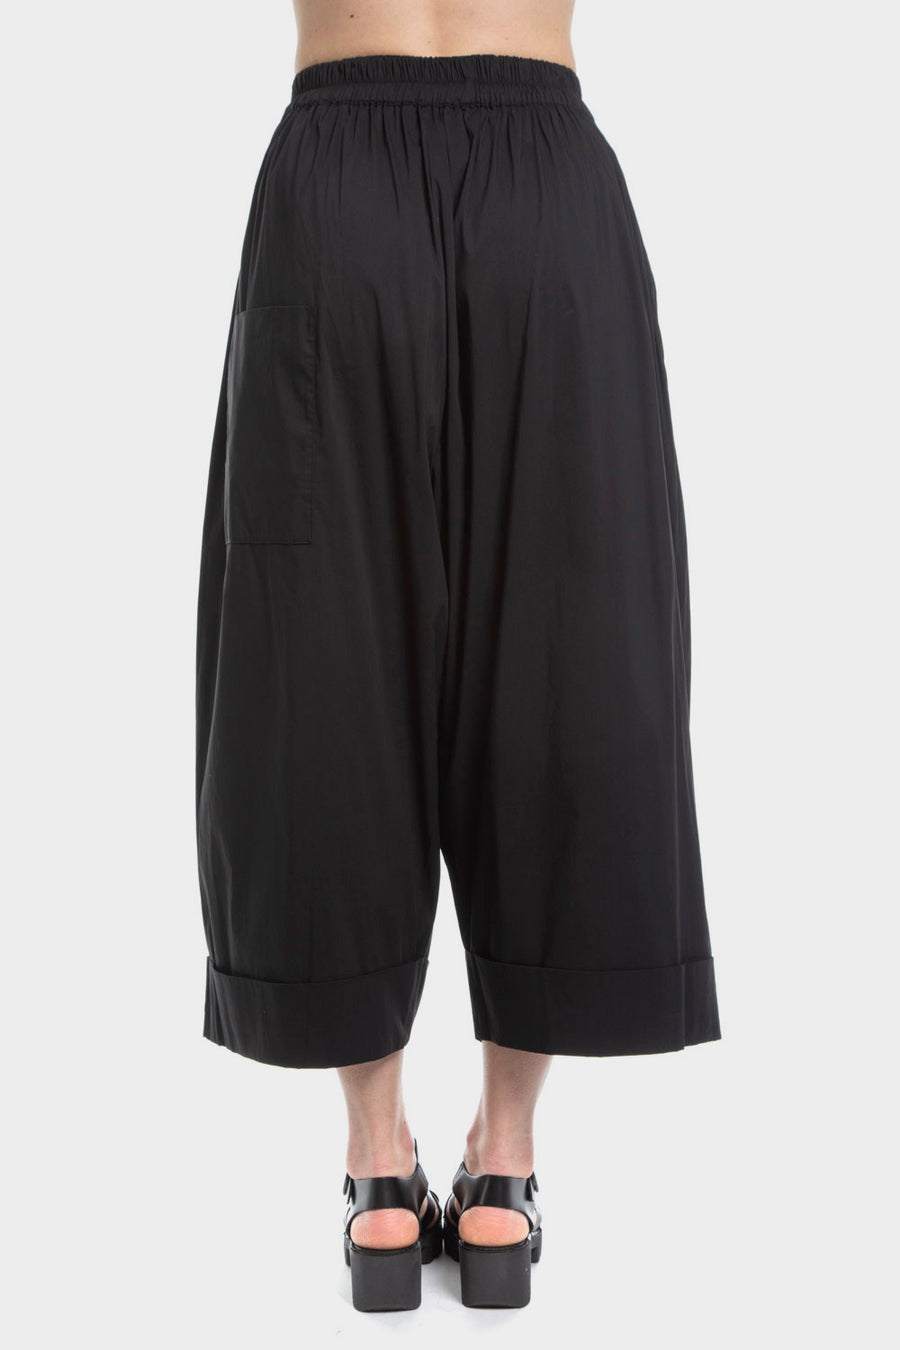 Pantalone Nu Black nero y24 13015